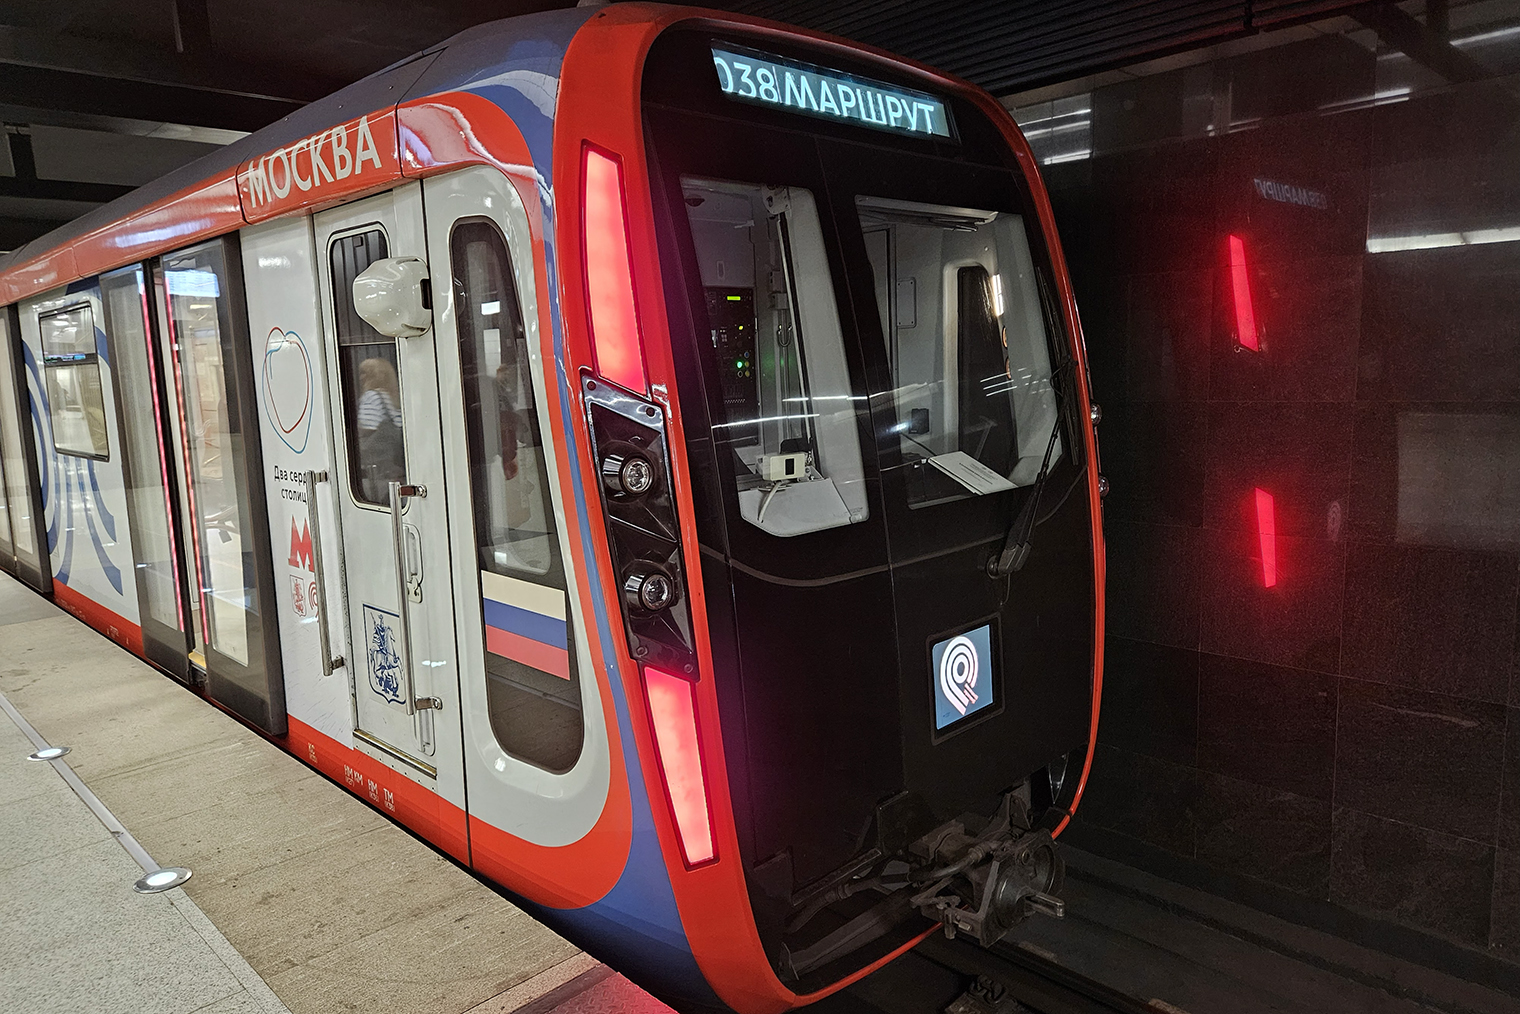 Поезд метро на Fold 5 выглядит неплохо, но черный цвет на фото недостаточно глубокий, а красные фонари получились малиновыми